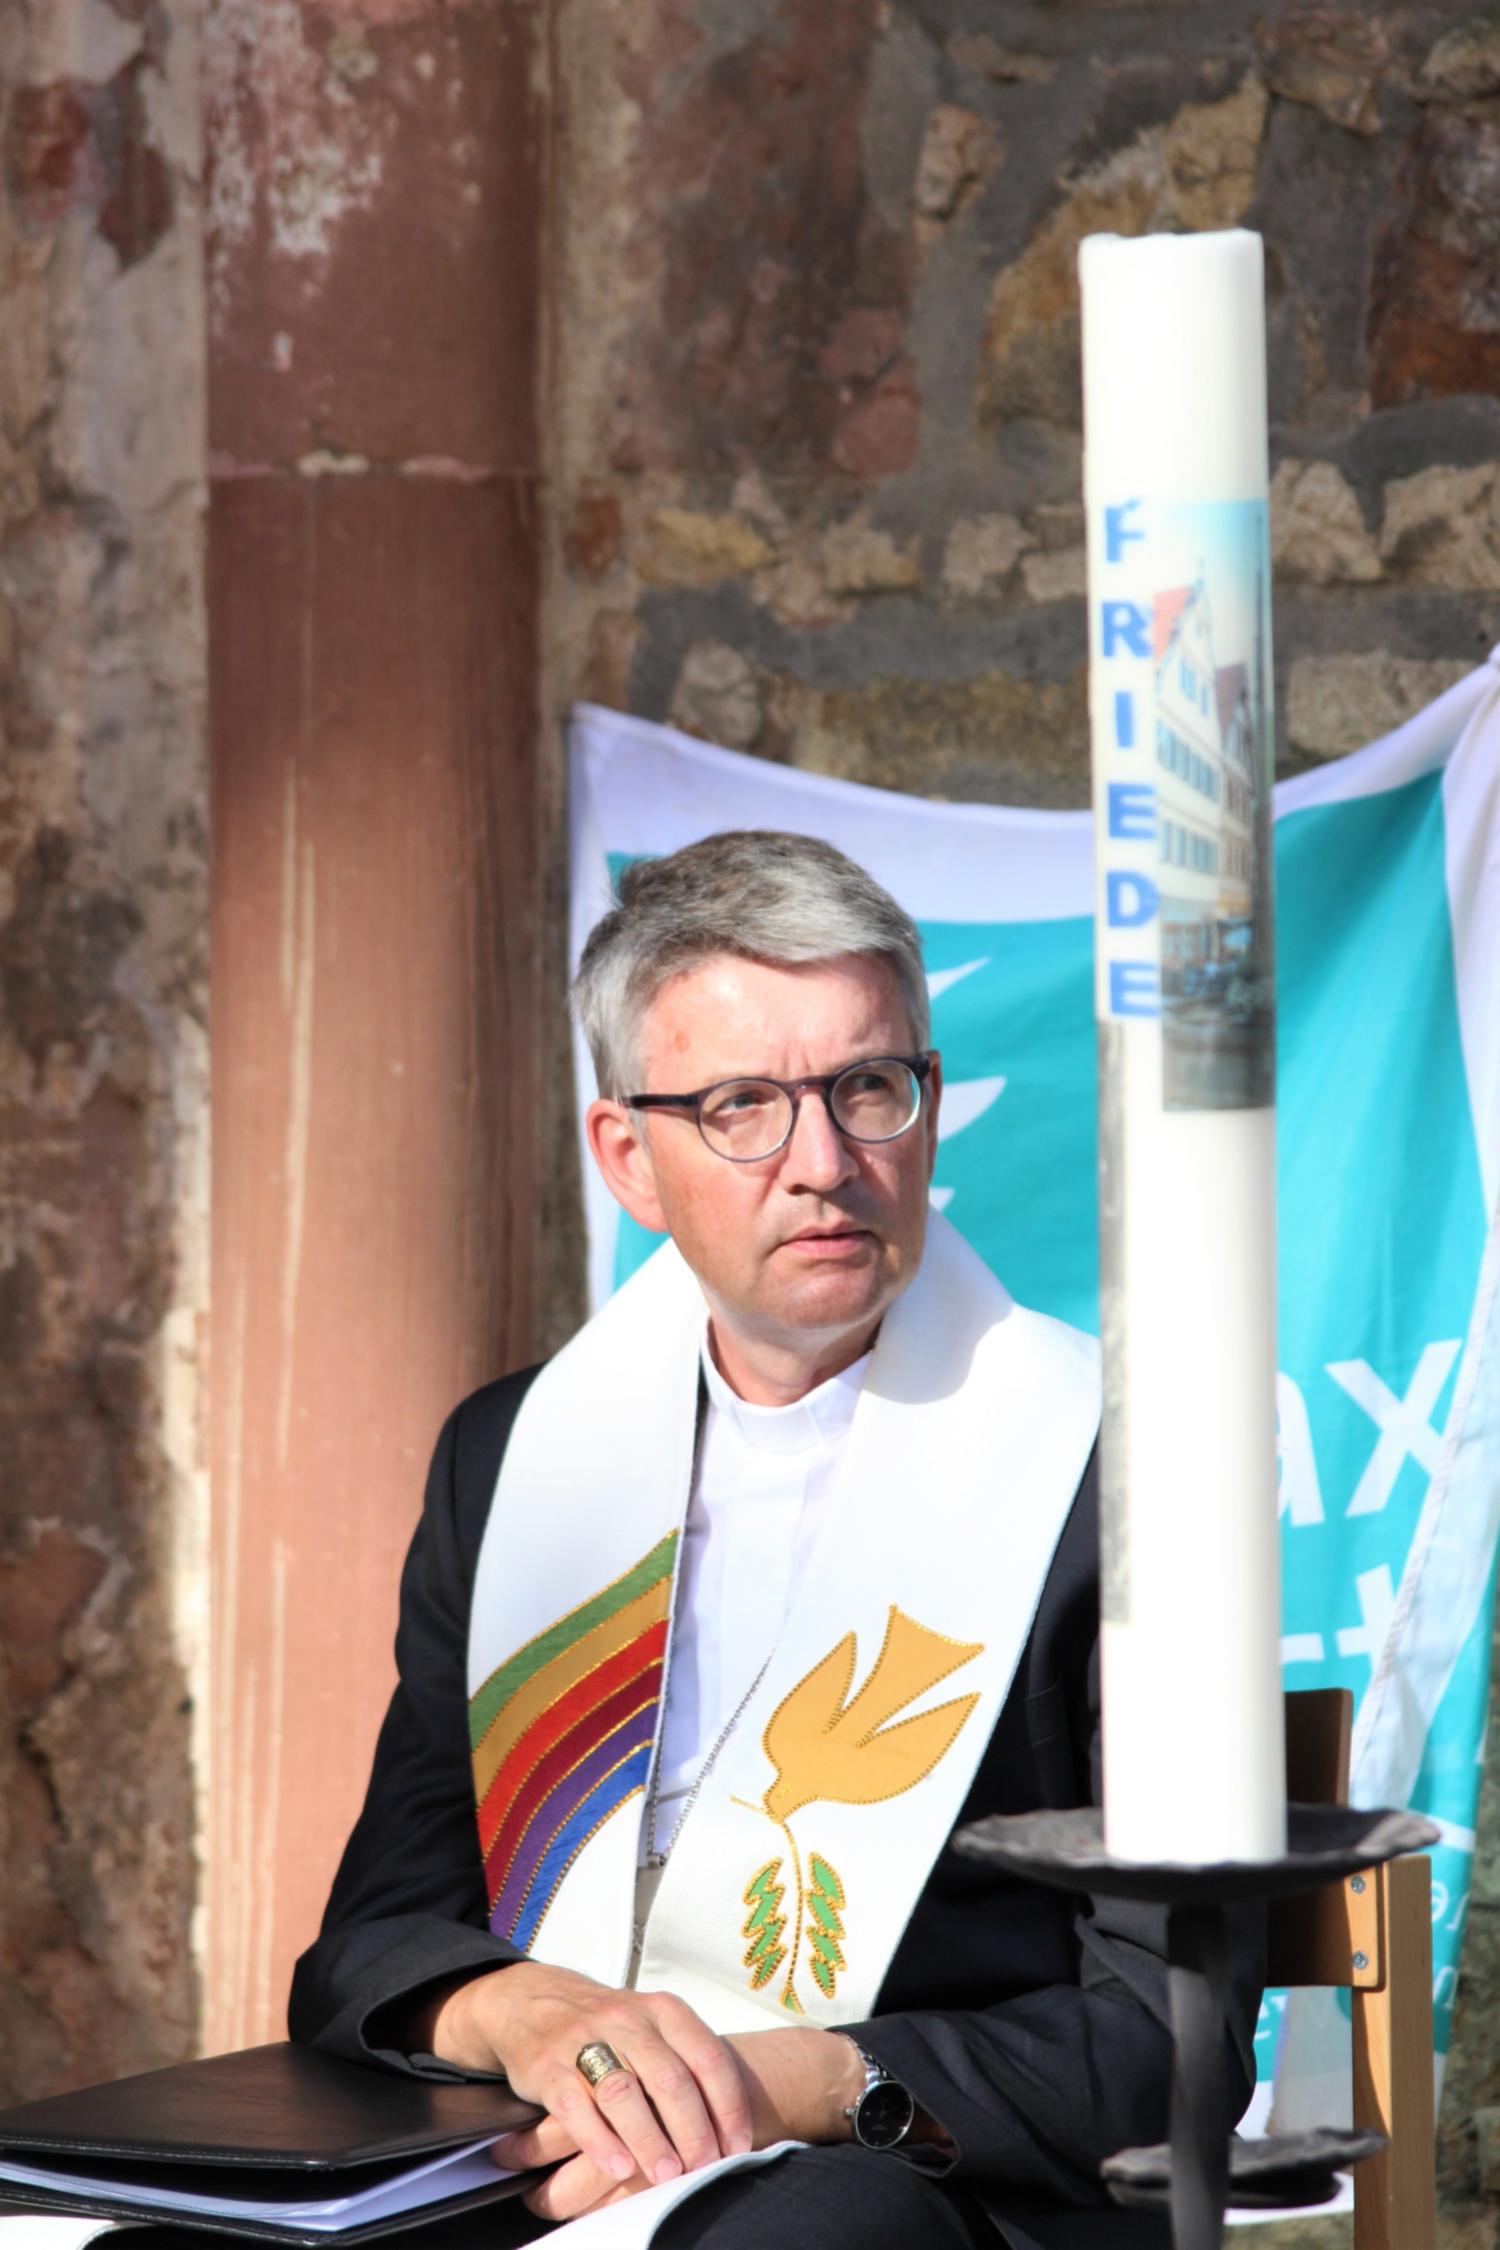 Bischof Peter Kohlgraf ist Präsident von Pax Christi. (c) Bistum Mainz / Blum